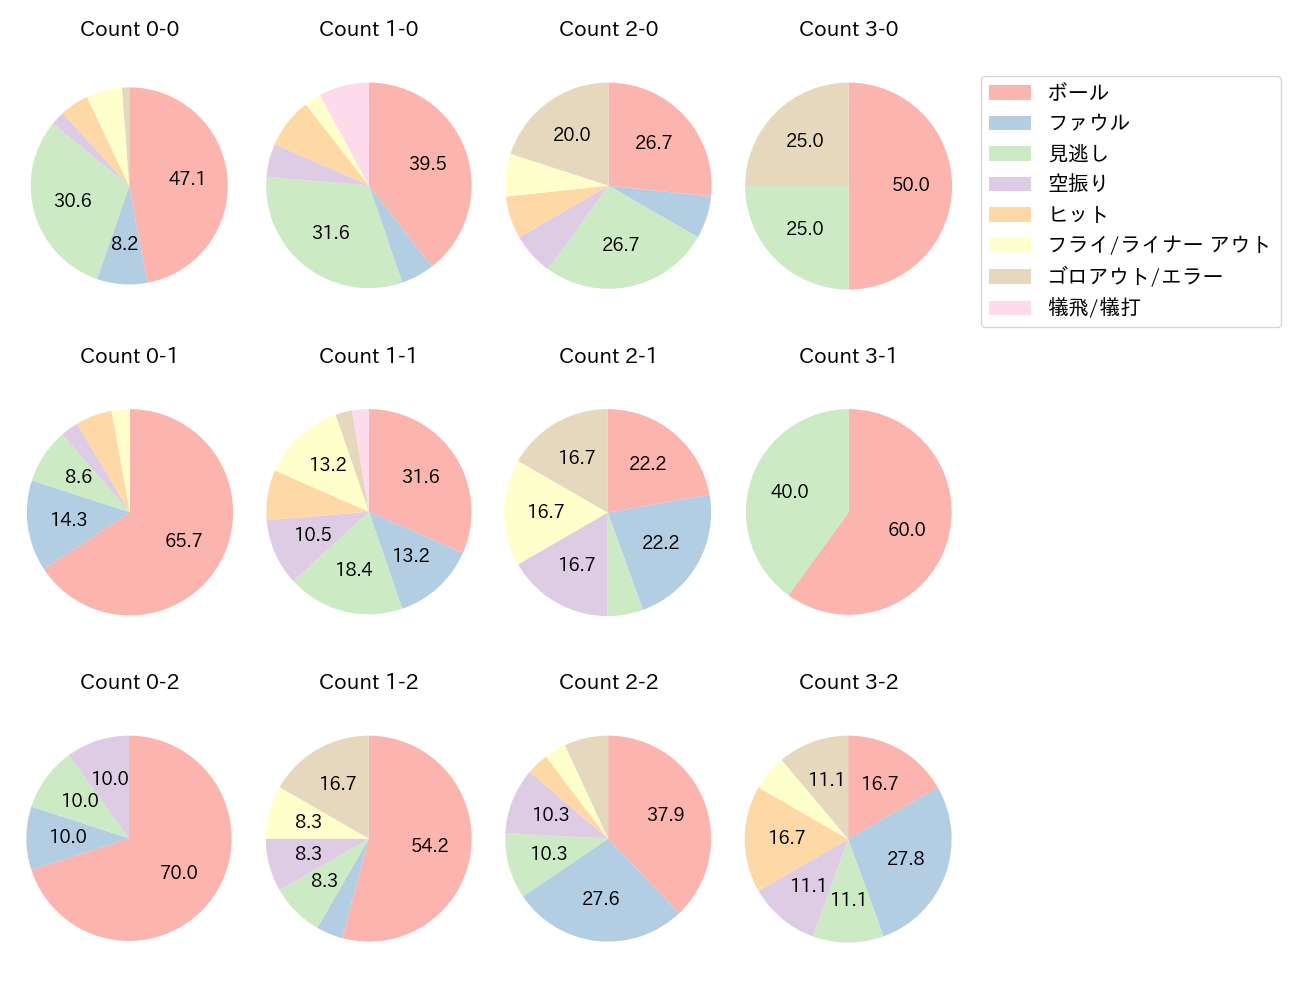 中村 悠平の球数分布(2021年9月)